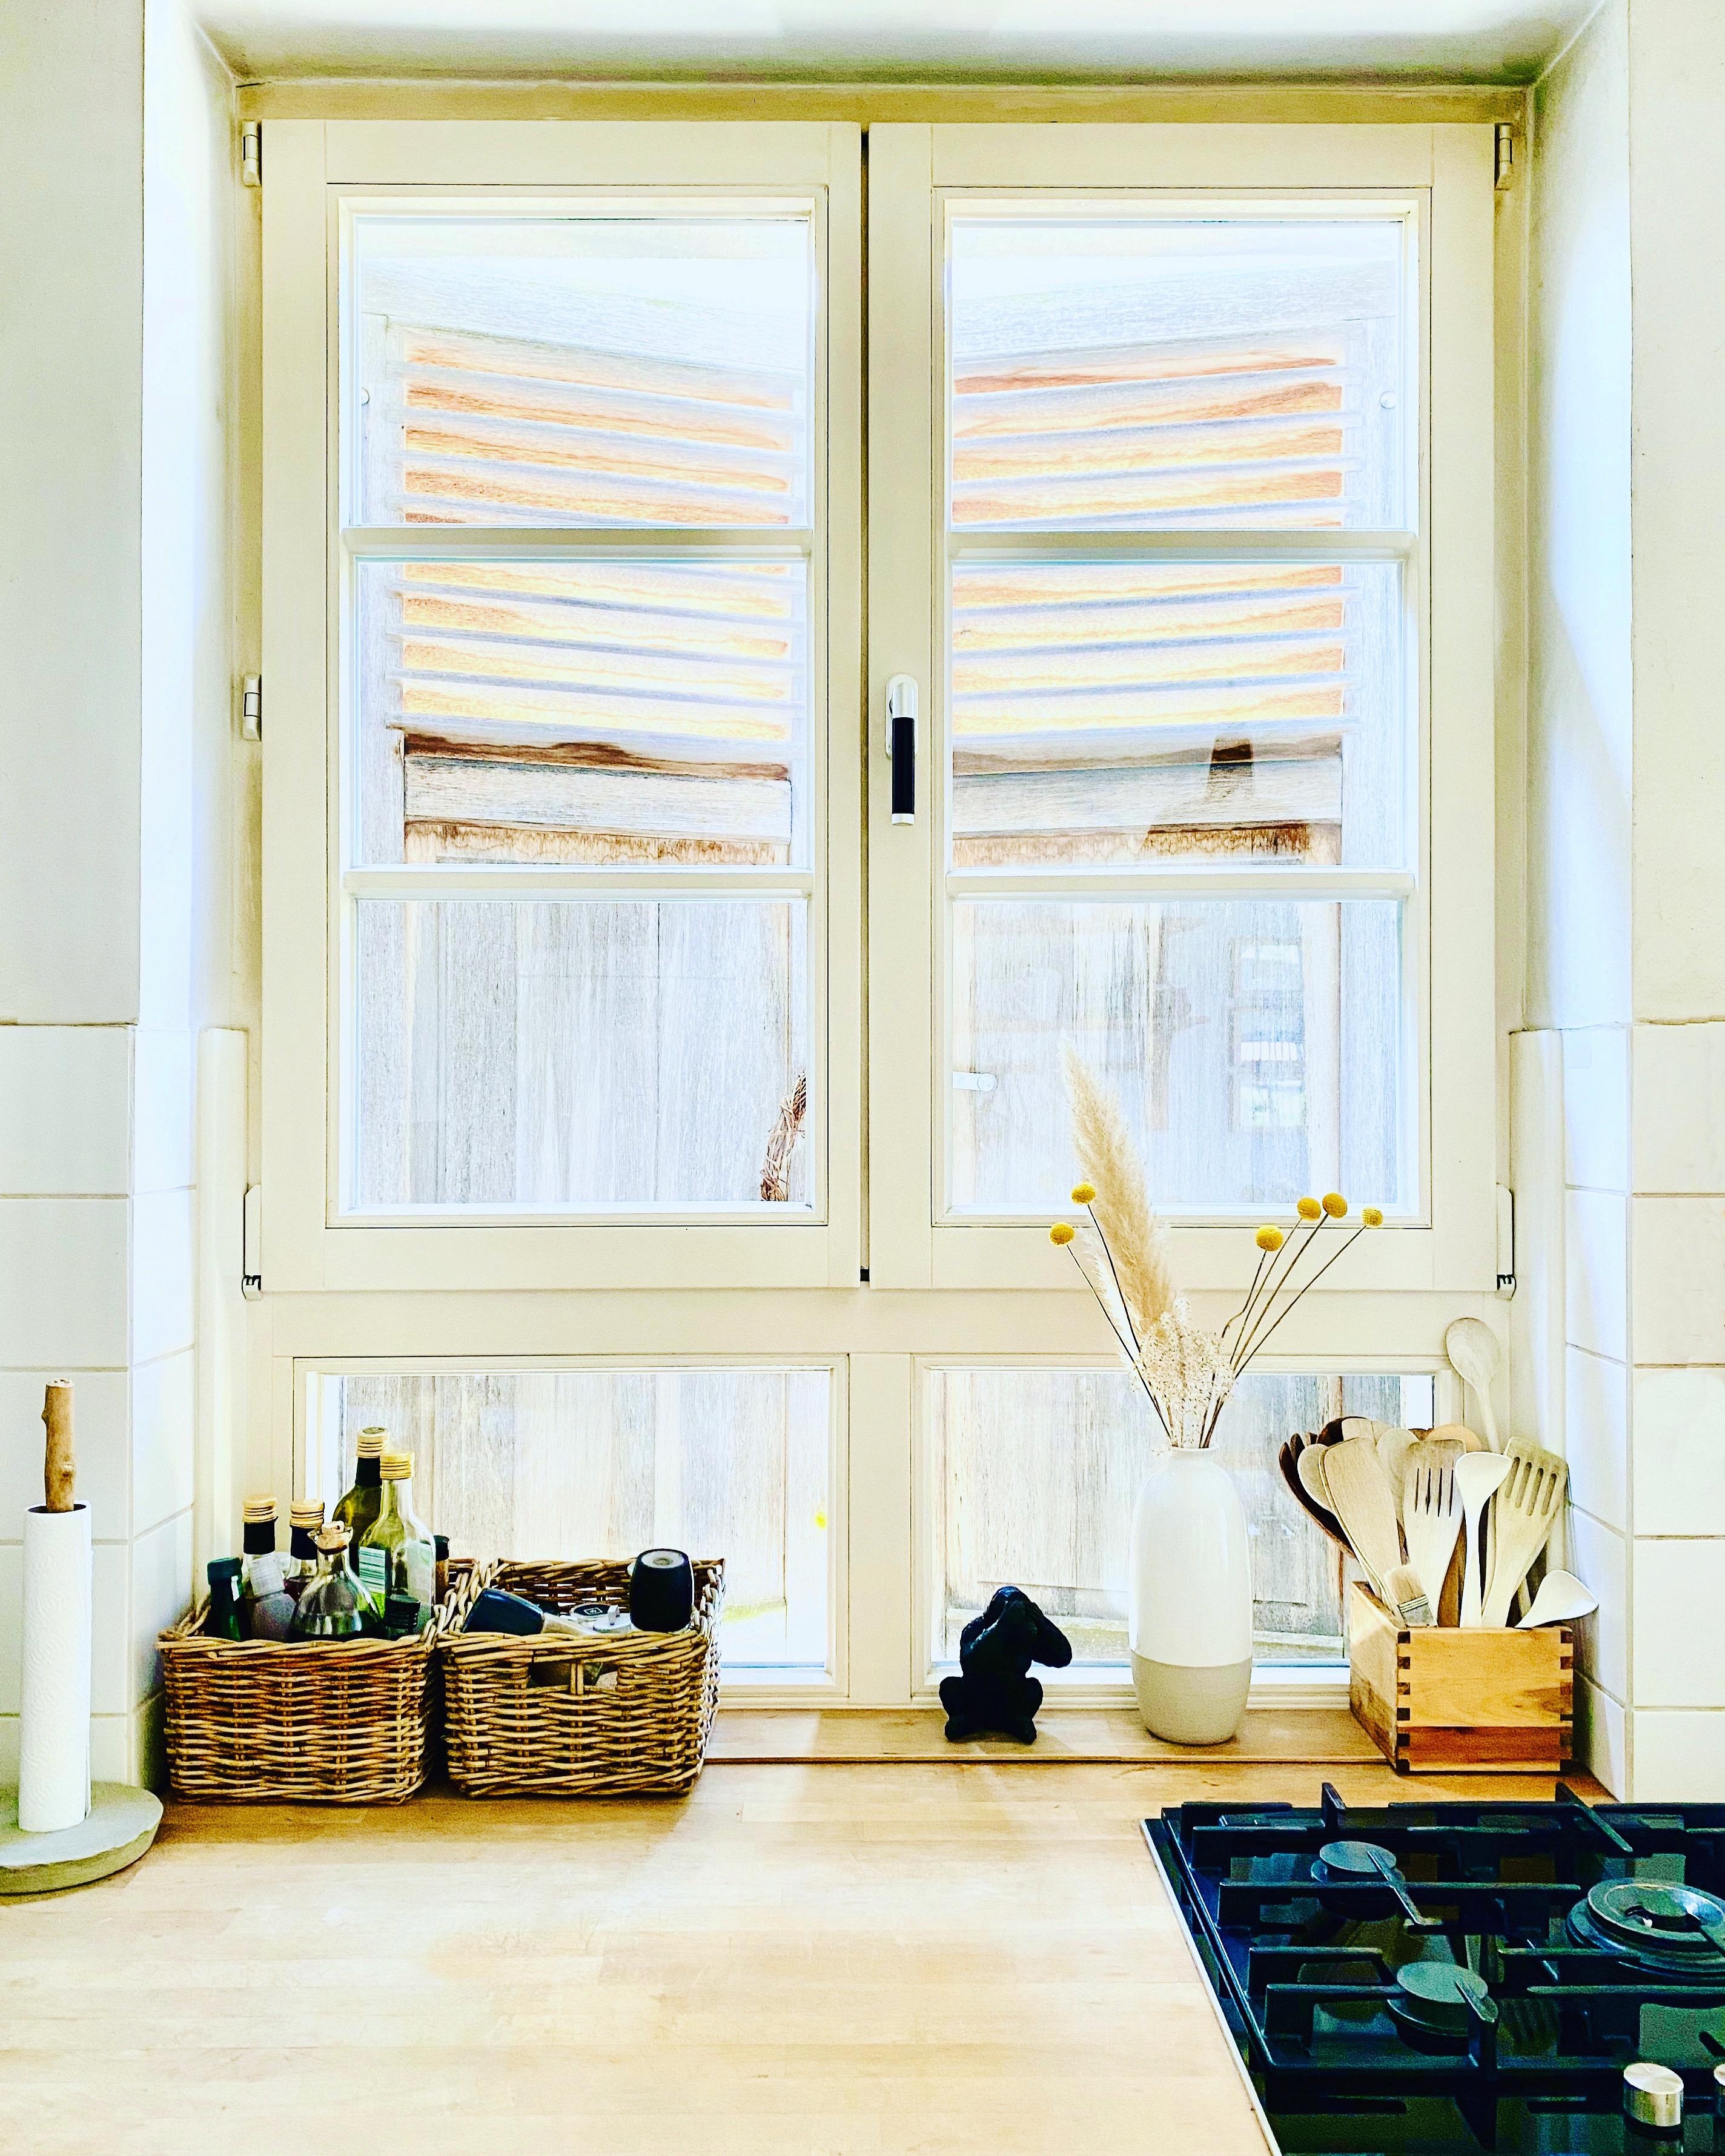 Im Sommer sind unsere #holzfensterläden ein toller #schattenspender ...
#küche #altbau #vasenliebe #dekoideen #landhaus